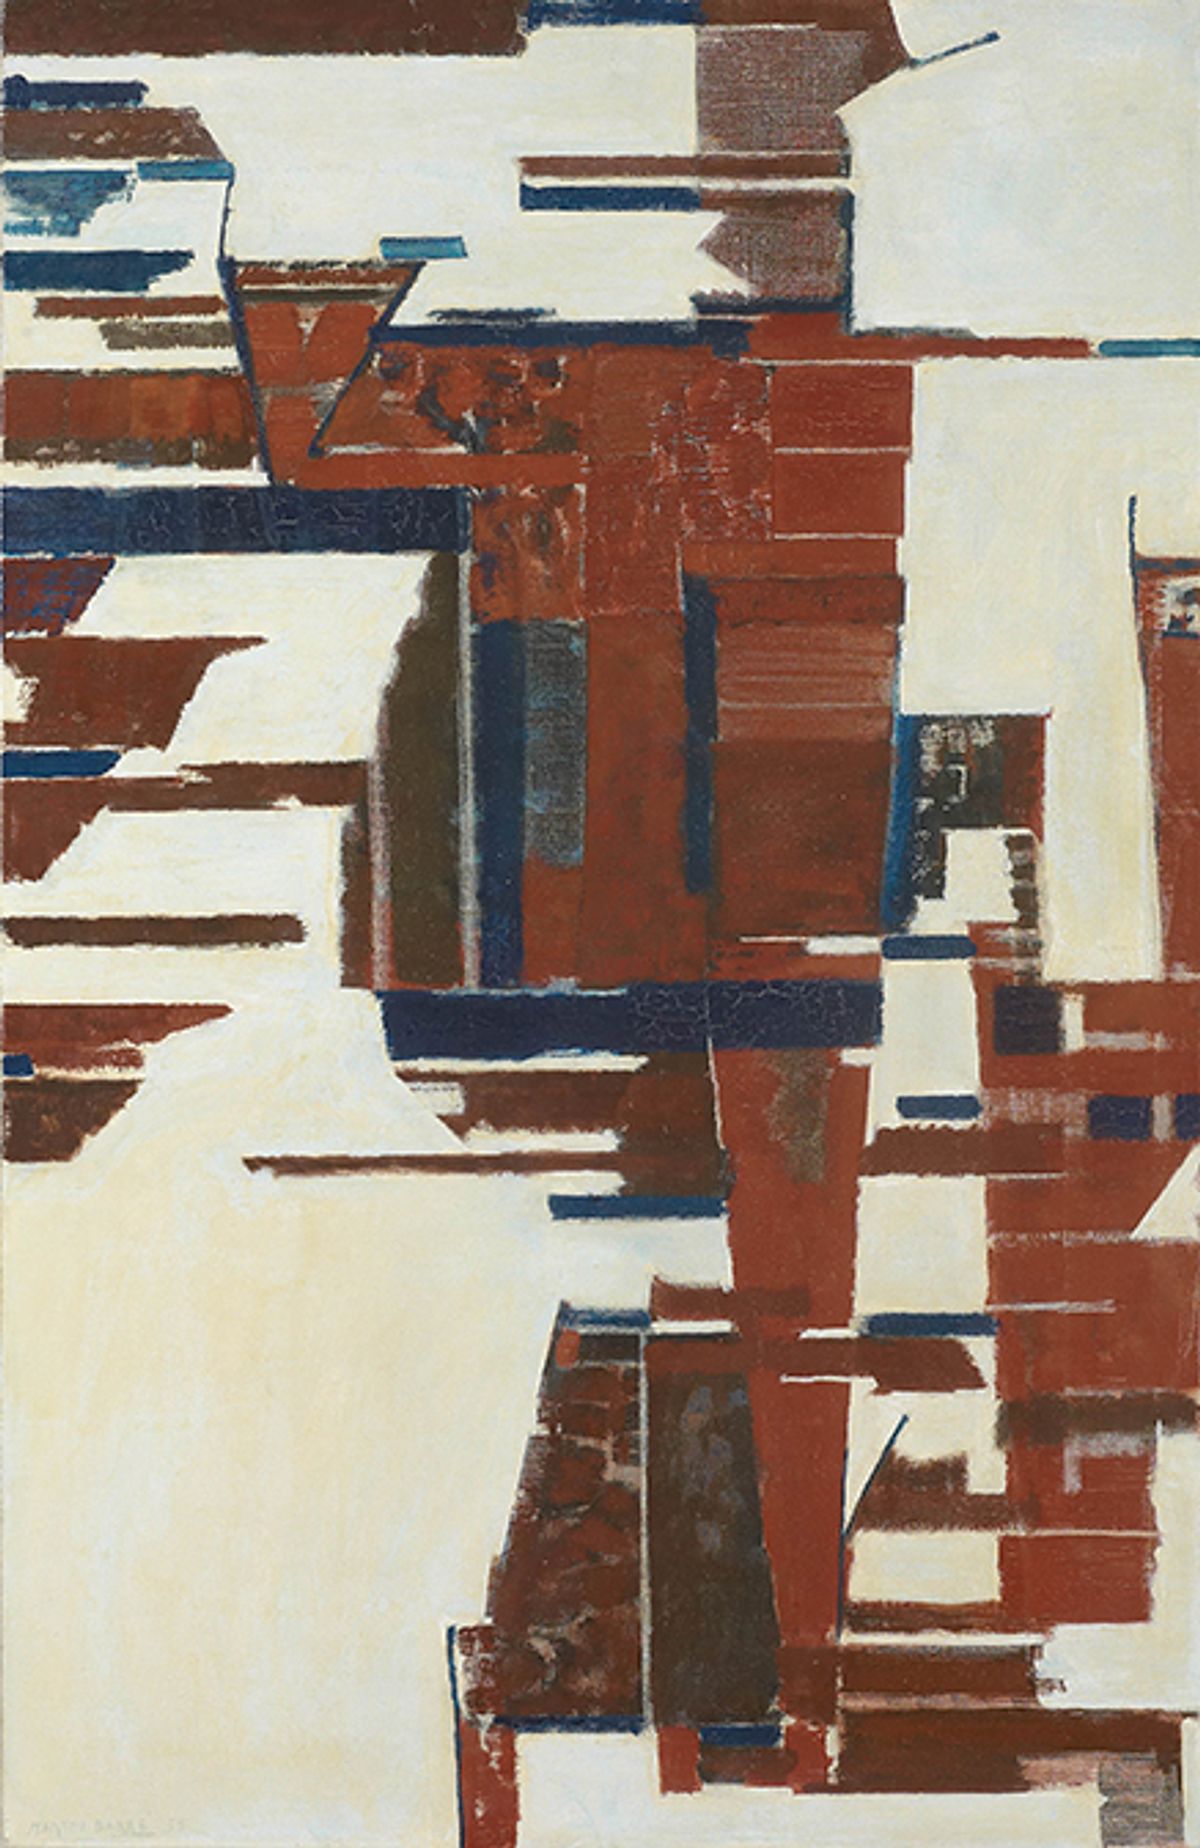 Martin Barré, Sans titre, 1955, huile sur toile. © Galerie Applicat-Prazan, Paris